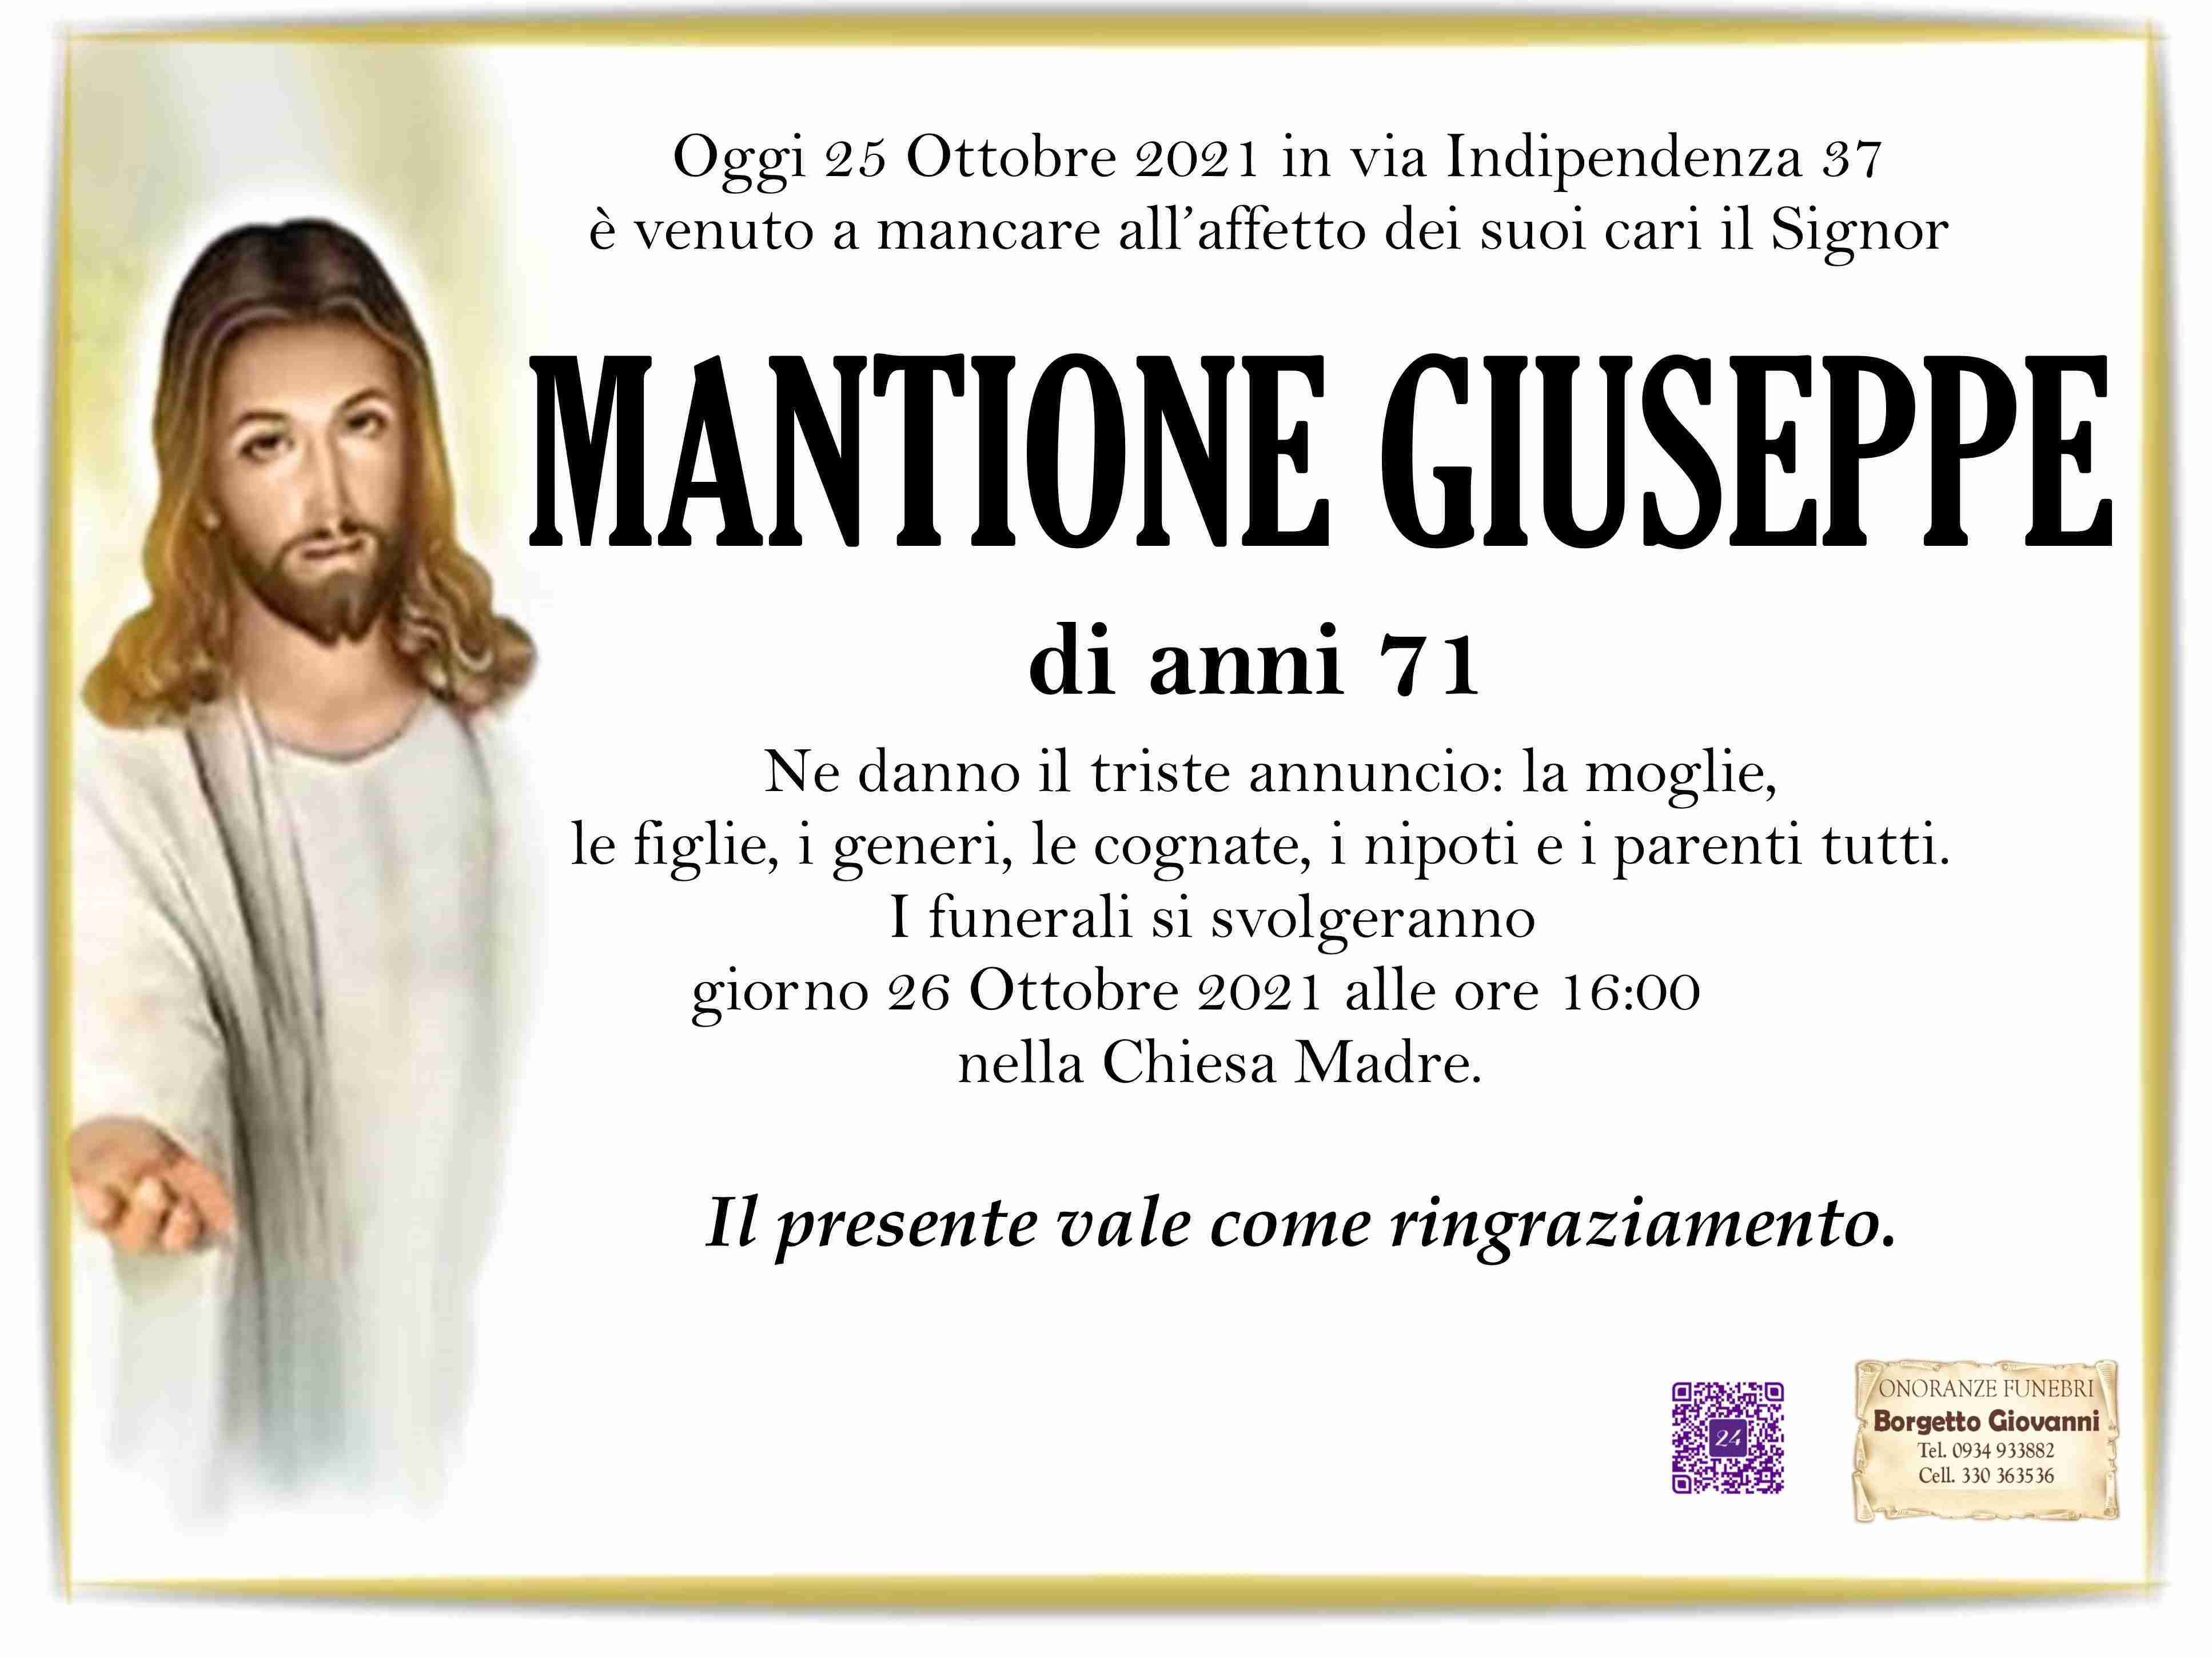 Giuseppe Mantione